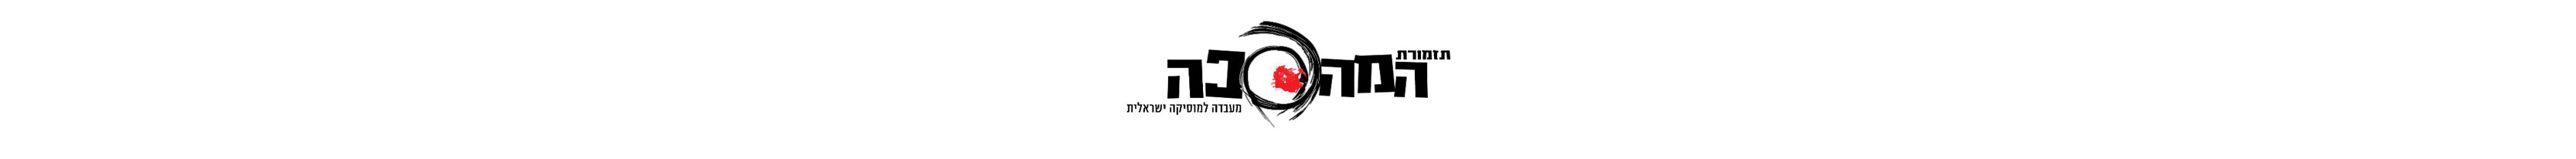 לוגו תזמורת המהפכה